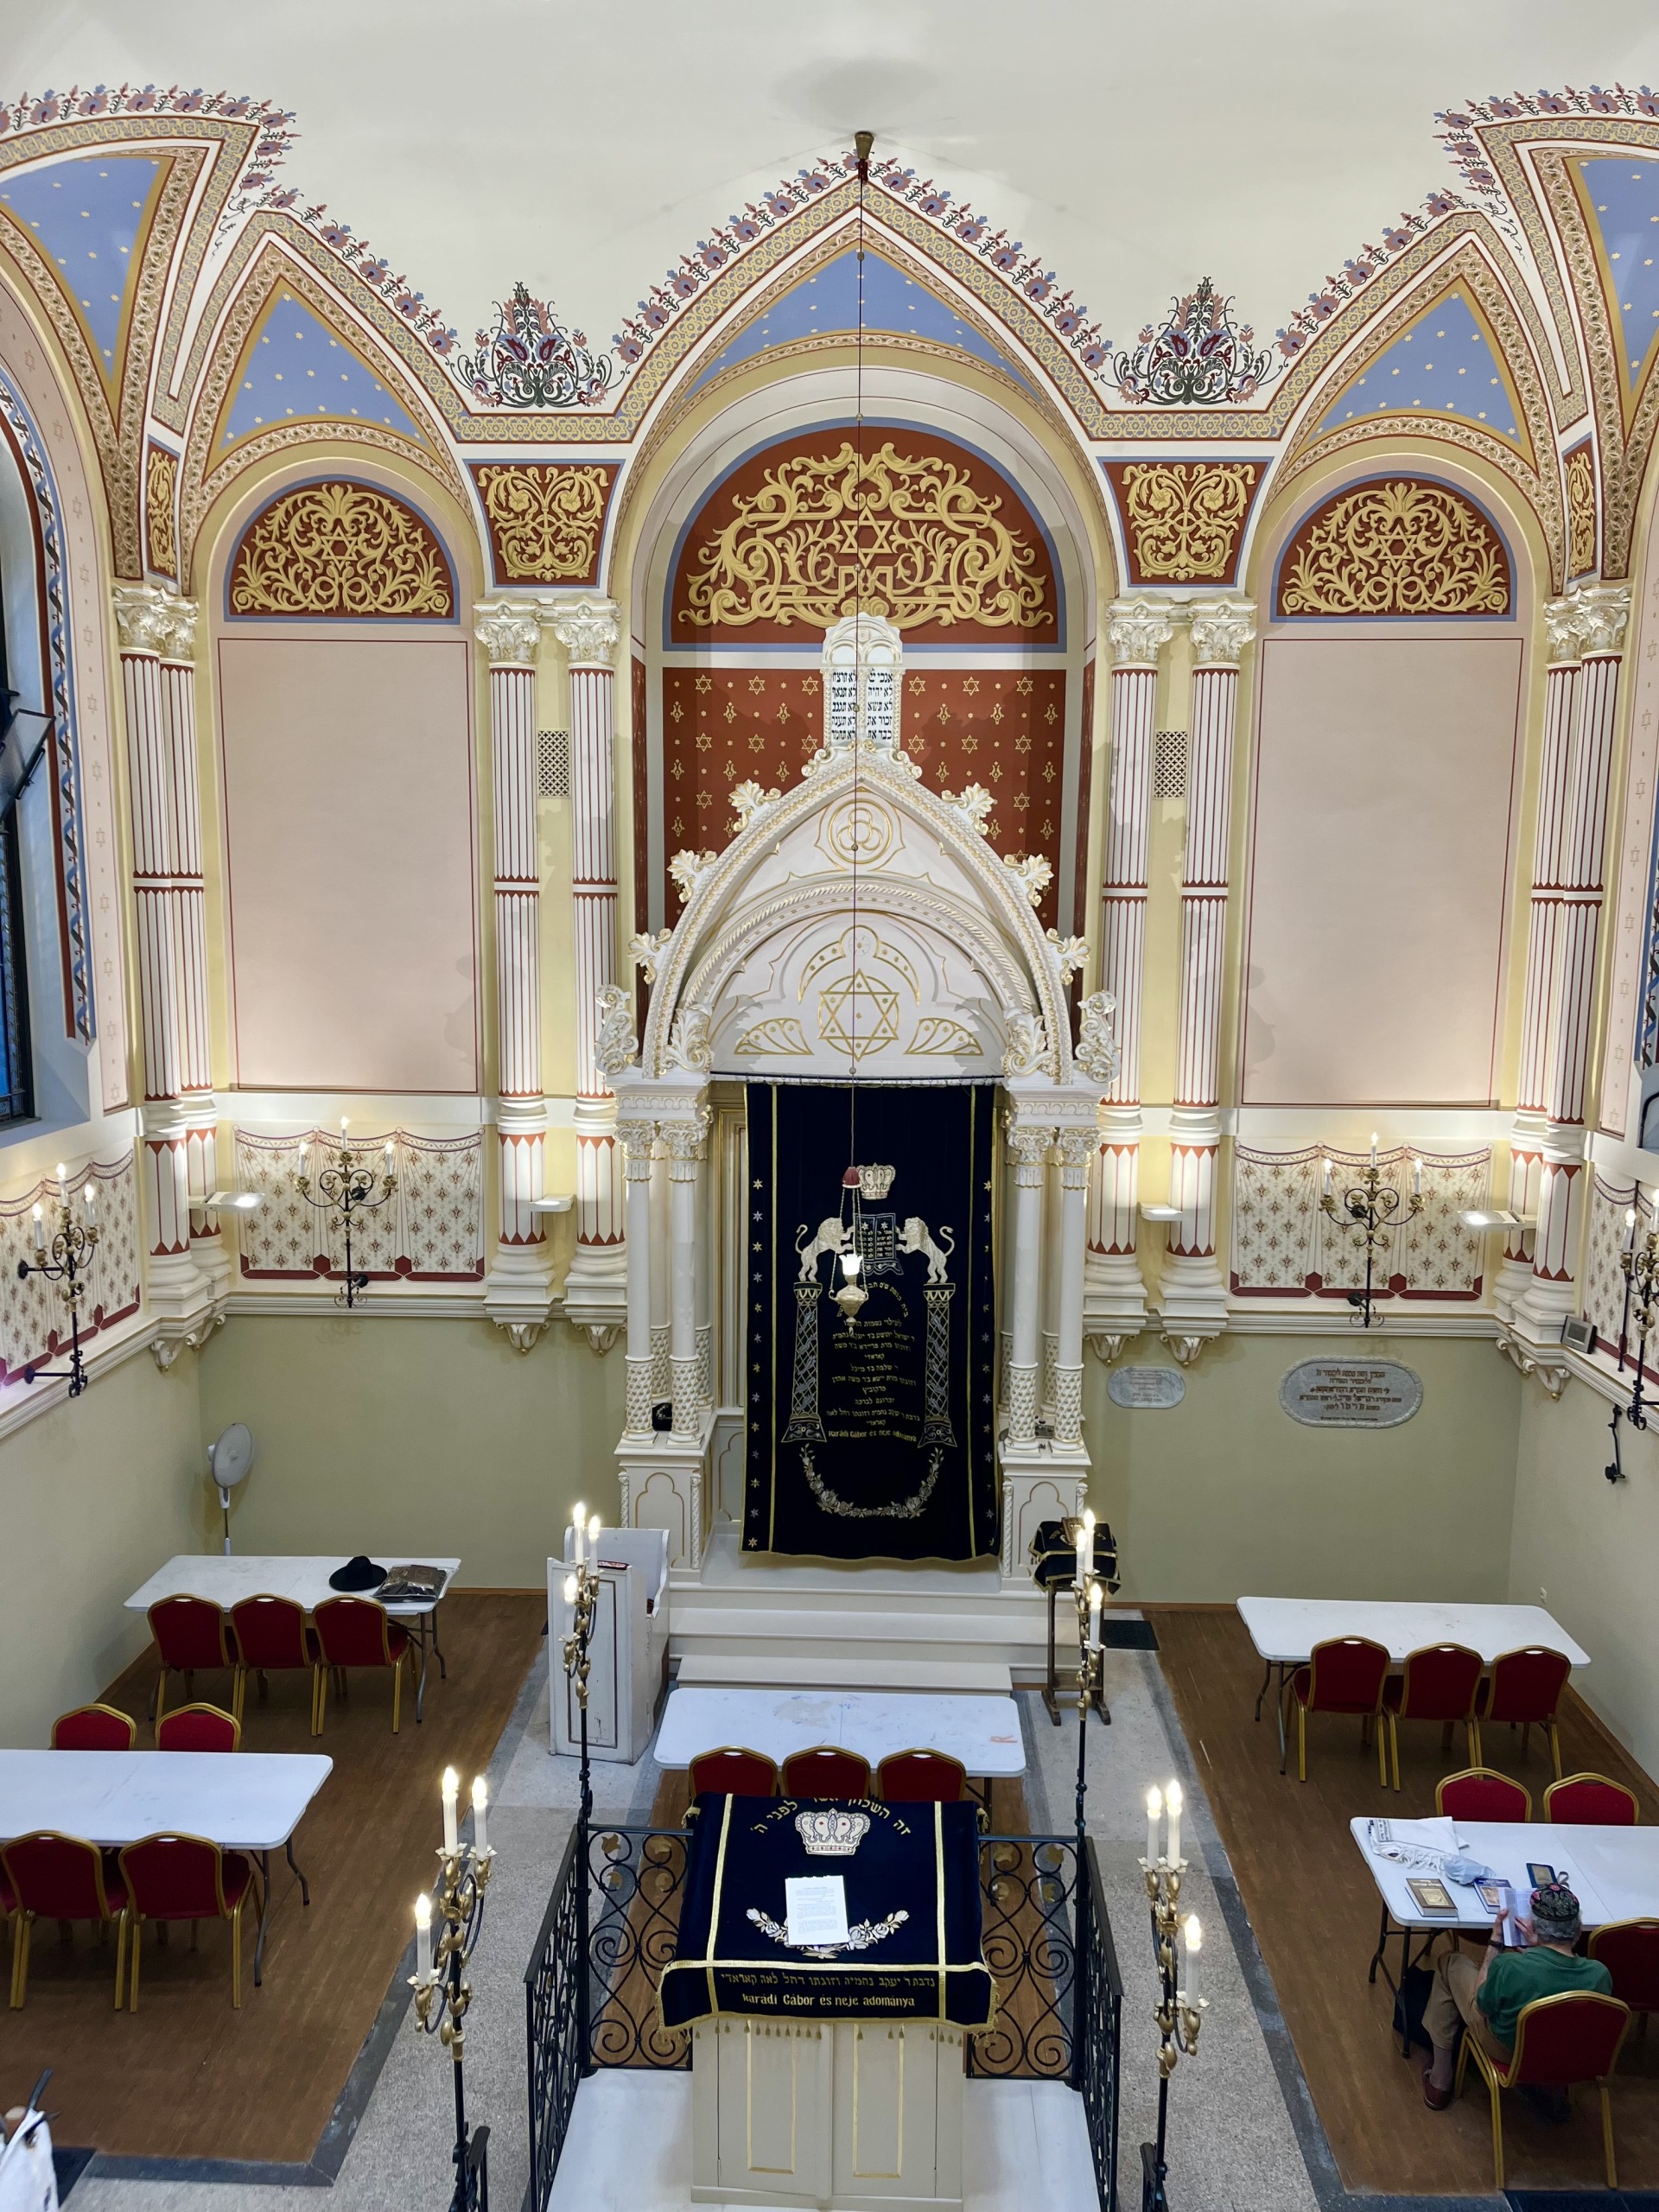 A Vasvári rabbija vitt minket körbe a frissen felújított zsinagógában